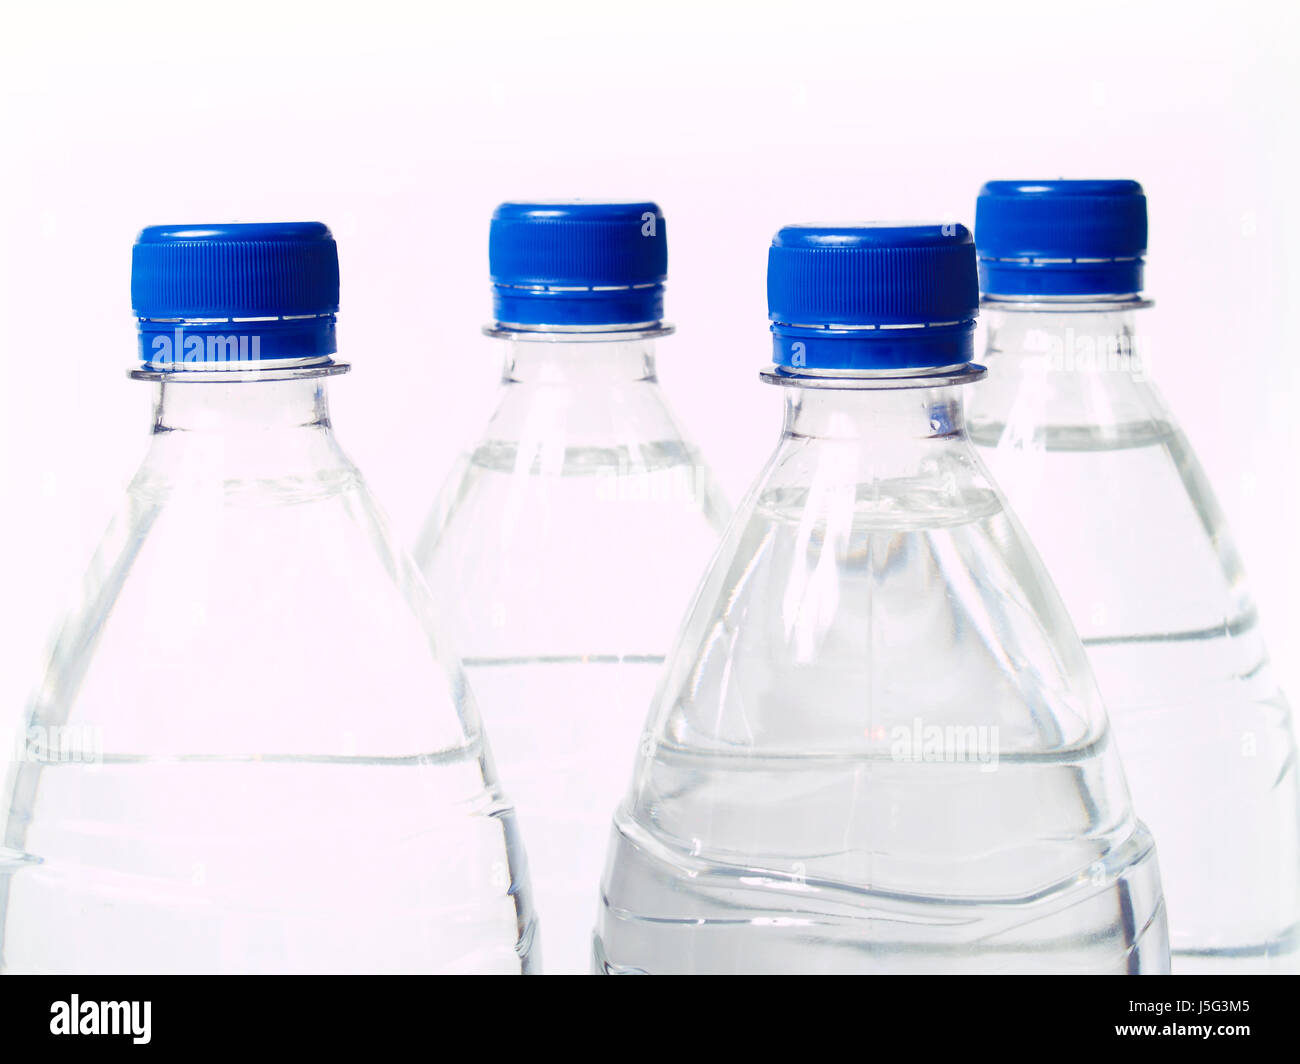 Blue materiale sintetico plastico contenitore coperchio di bottiglie di acqua in bottiglia acqua Foto Stock